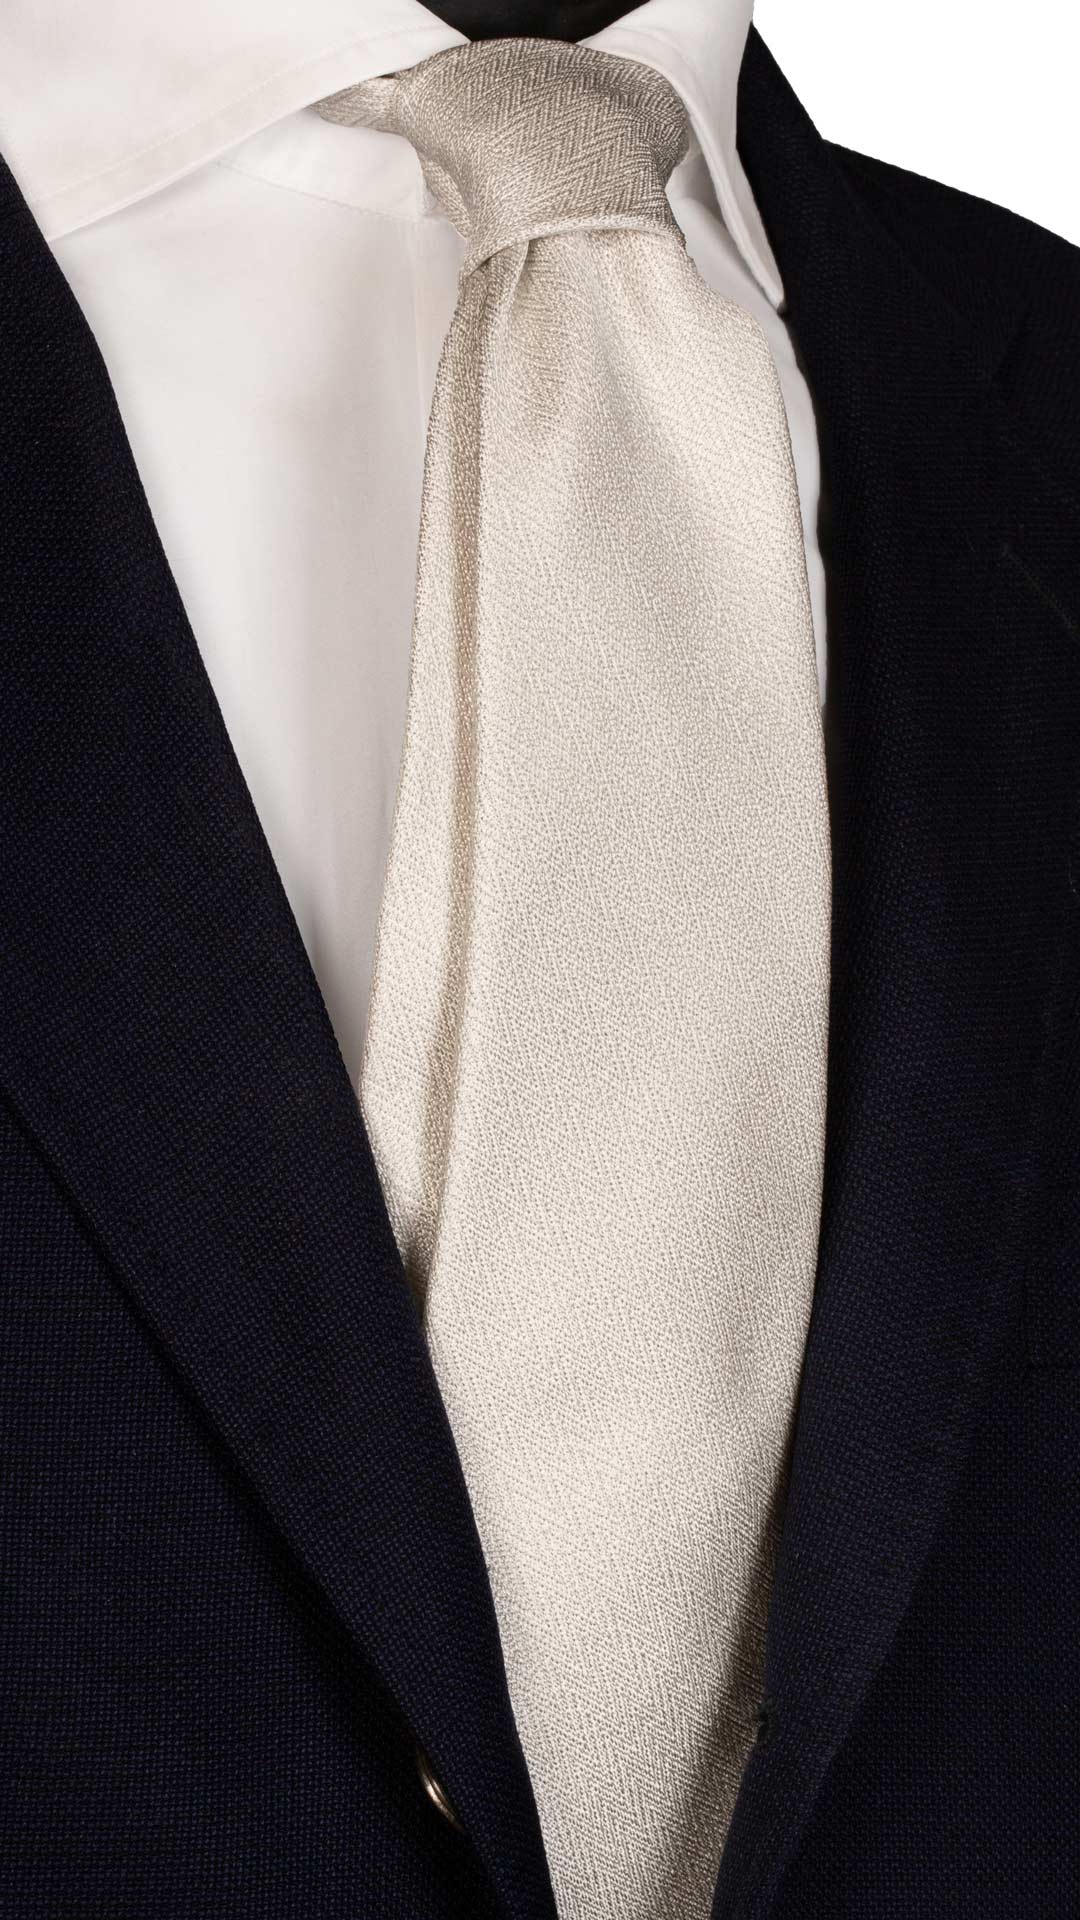 Cravatta da Cerimonia di Seta Grigio Argento Fantasia Lisca di Pesce Made in Italy Graffeo Cravatte